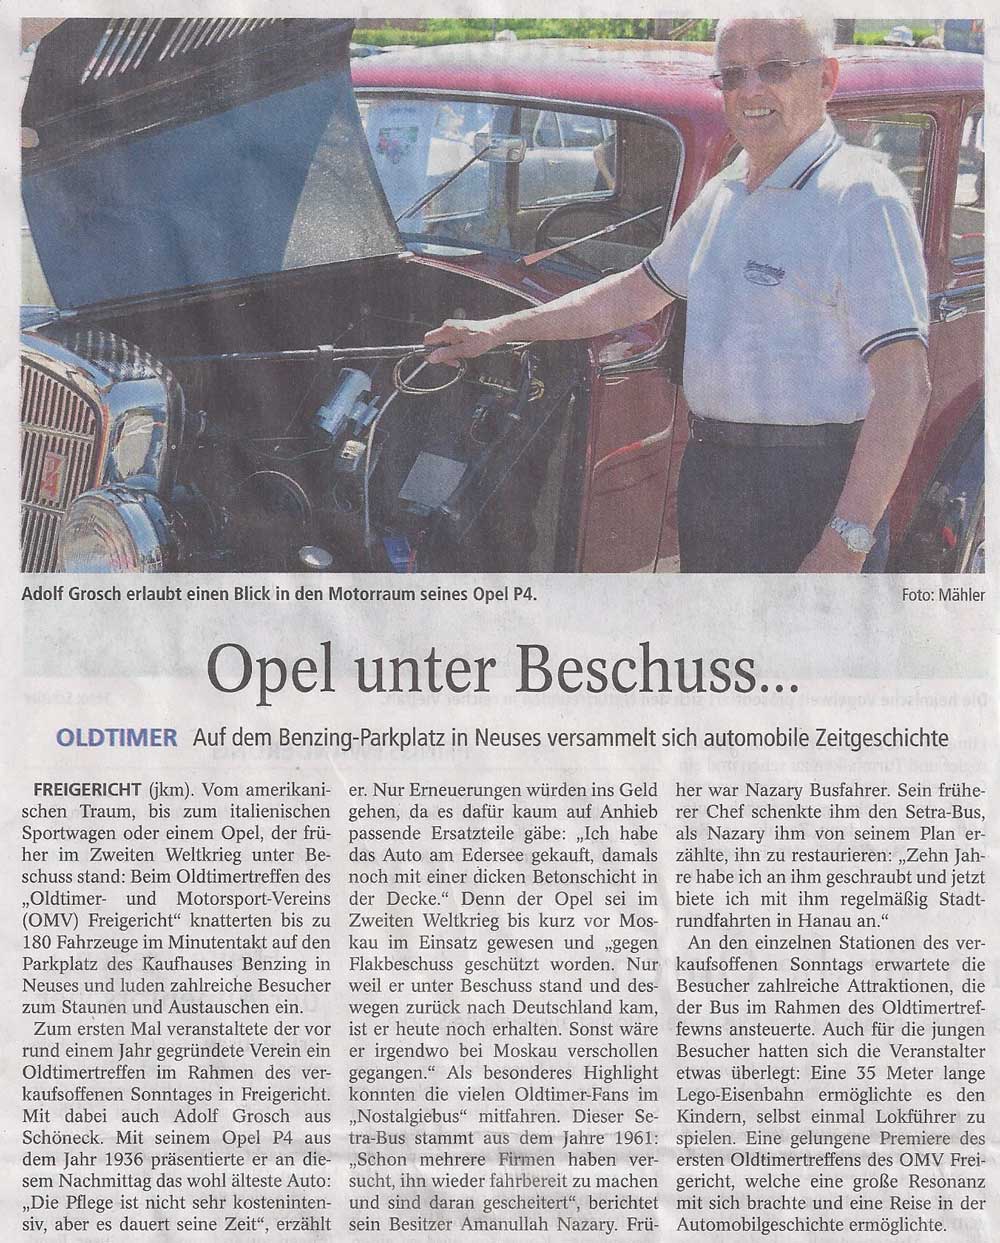 2016 05 10 Opel unter Beschuss GTextra